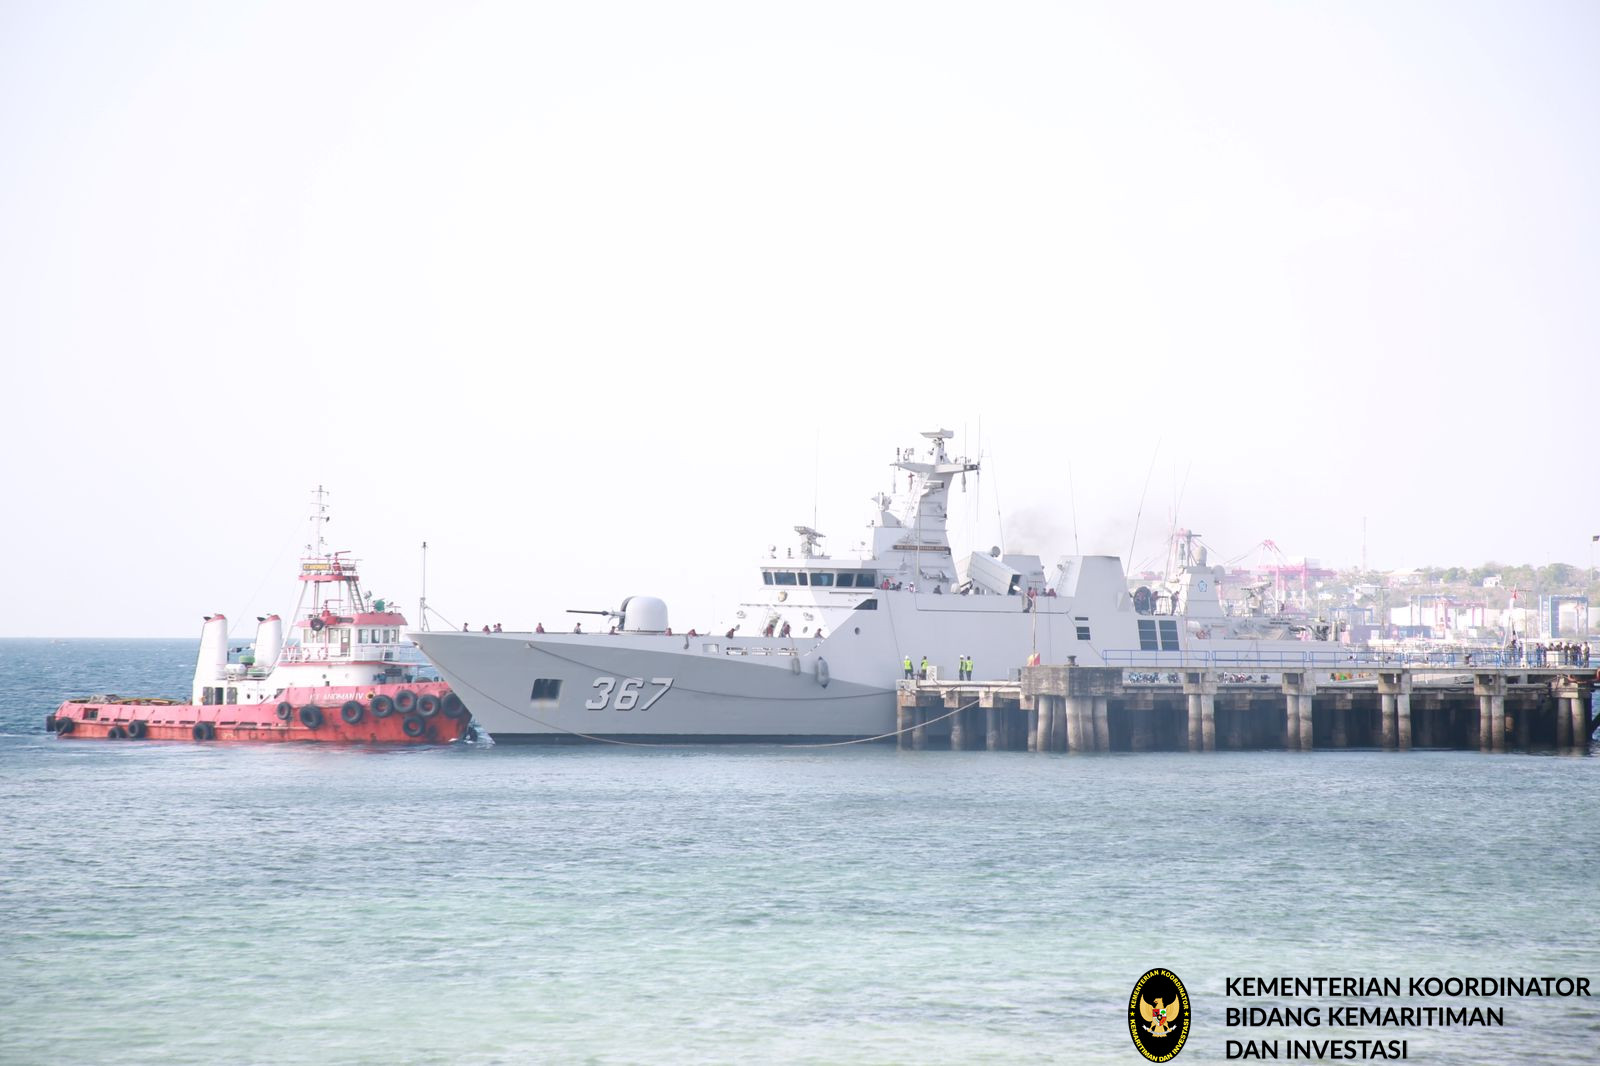 PT. Pelindo Dukung Perayaan Puncak Hari Maritim Nasional ke-59 